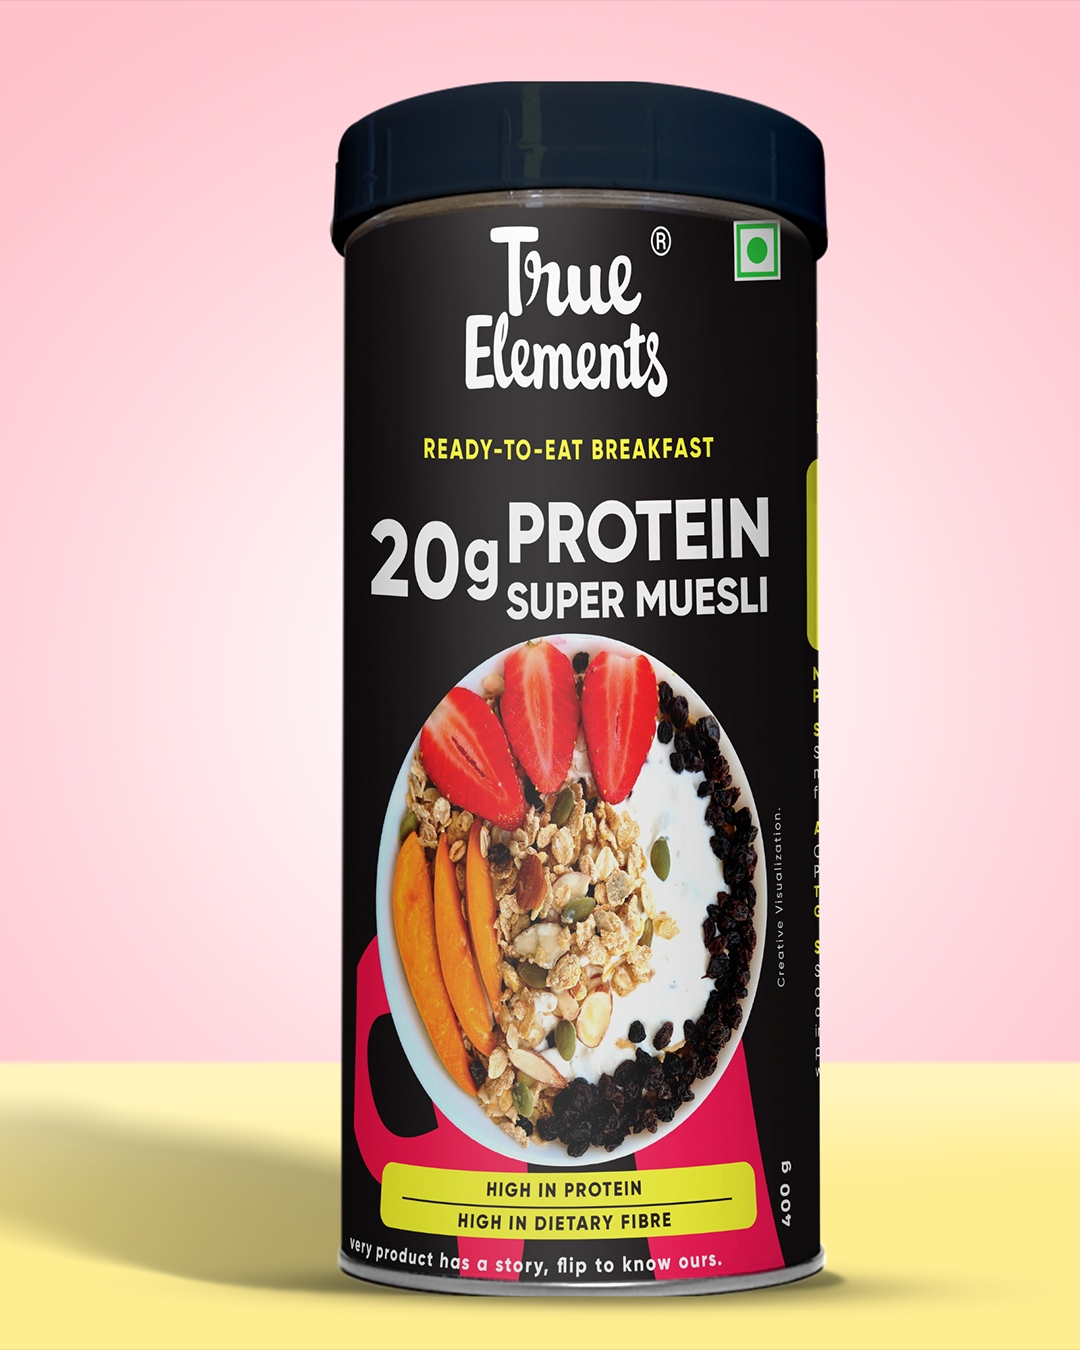 True Elements Protein Muesli - Contains 20g Protein